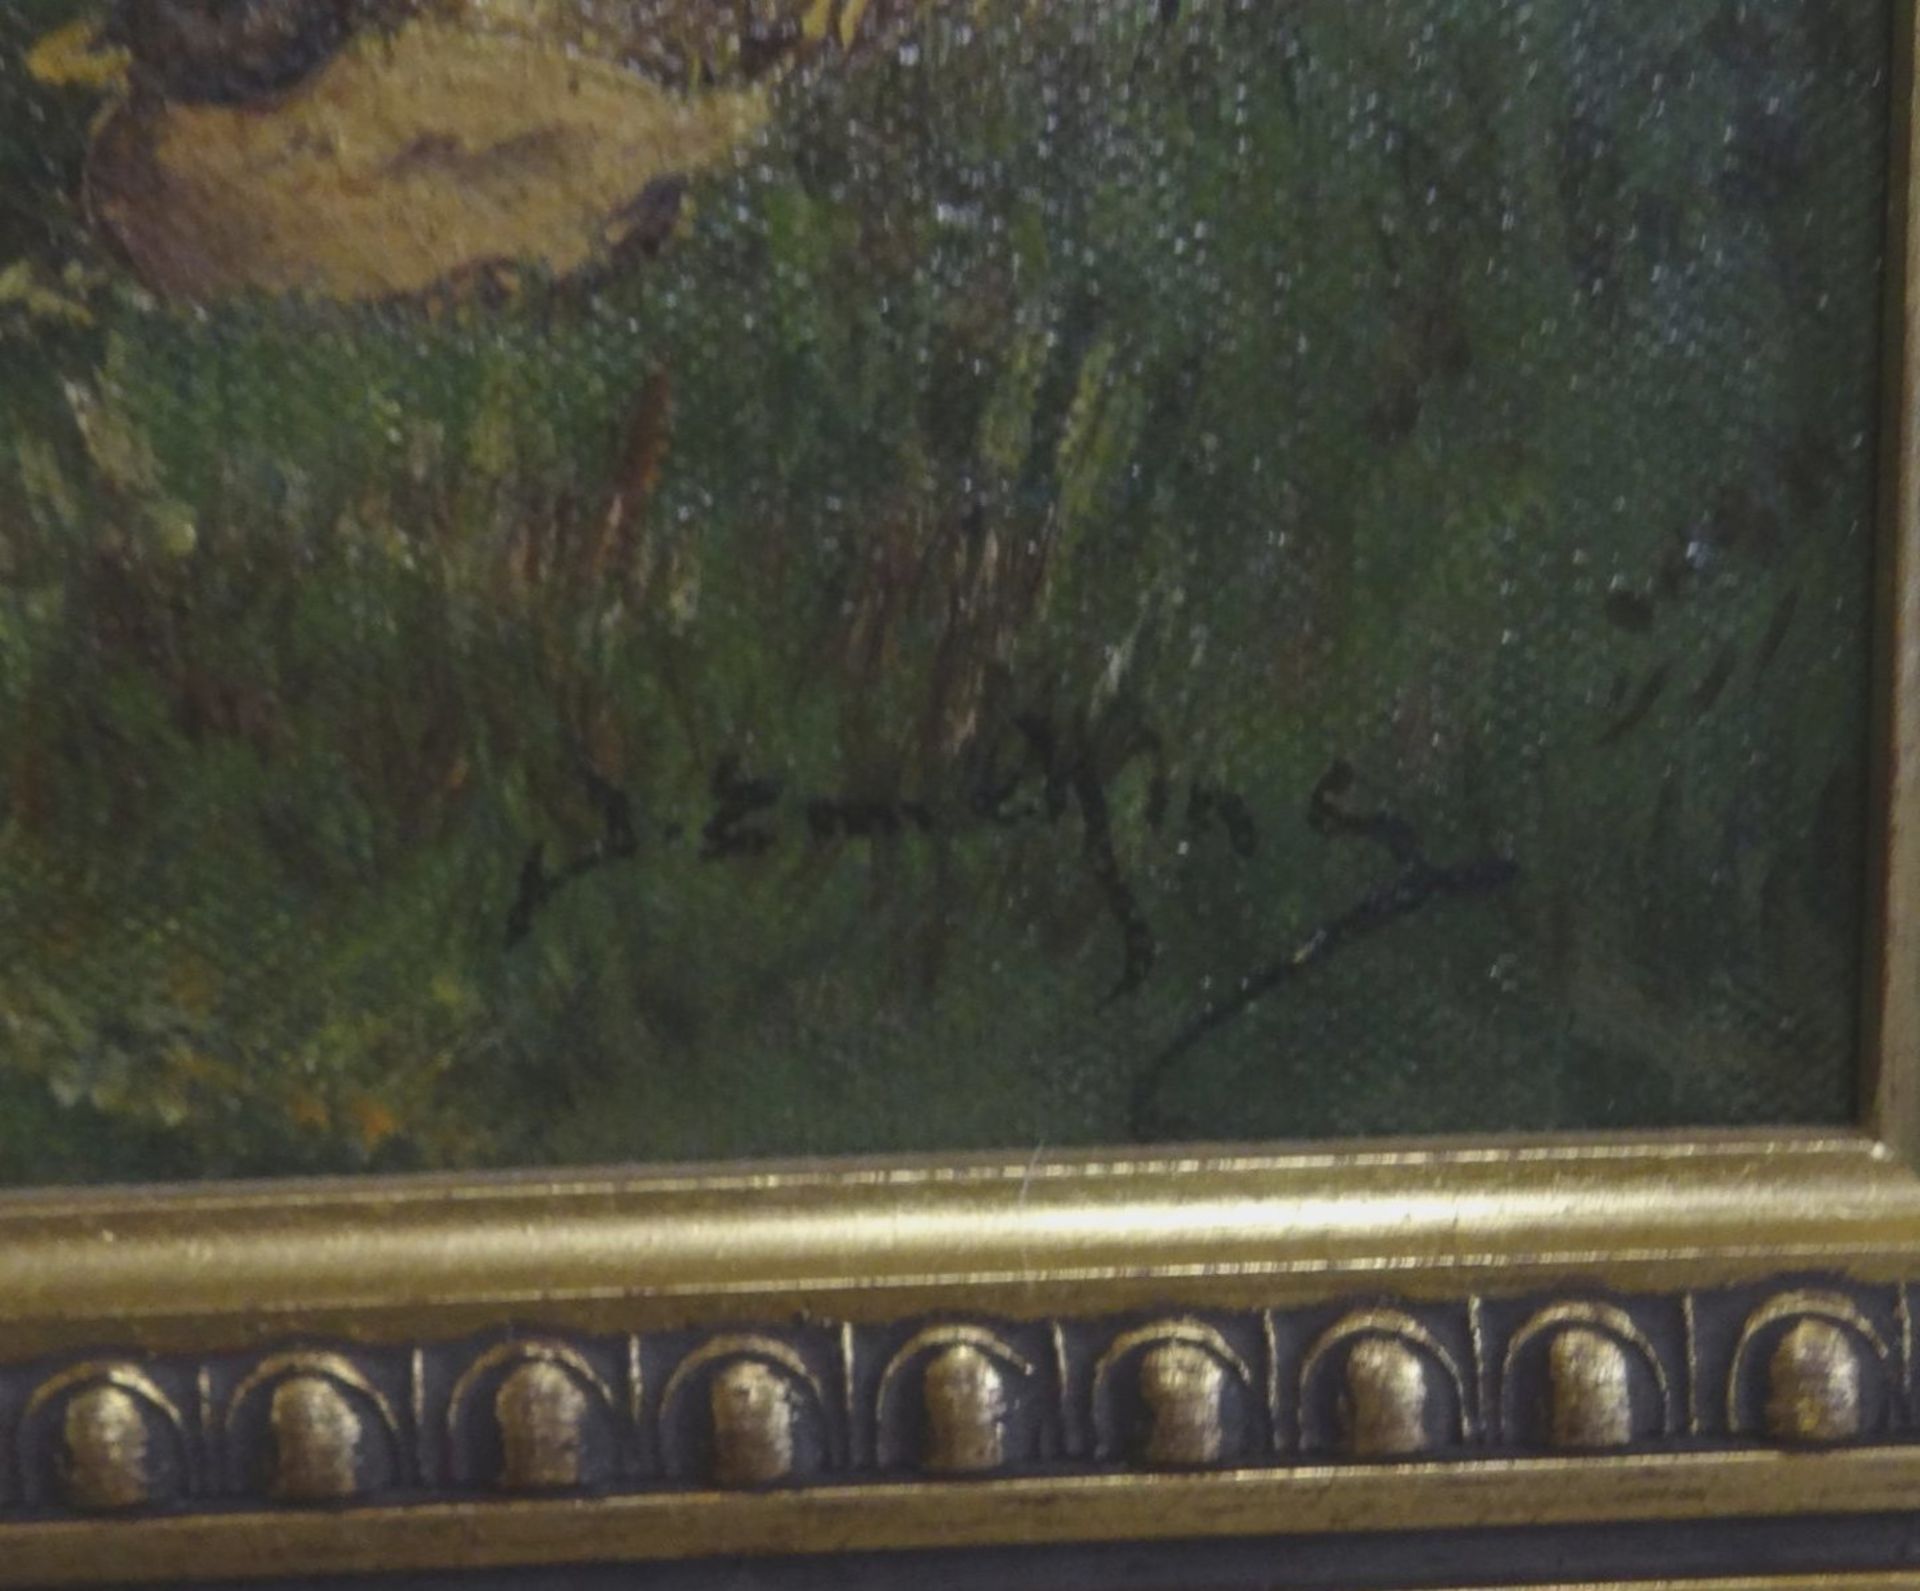 unleserl. signiert "Enten" Öl/Leinen, gerahmt, RG 38x44 cm - Bild 4 aus 5